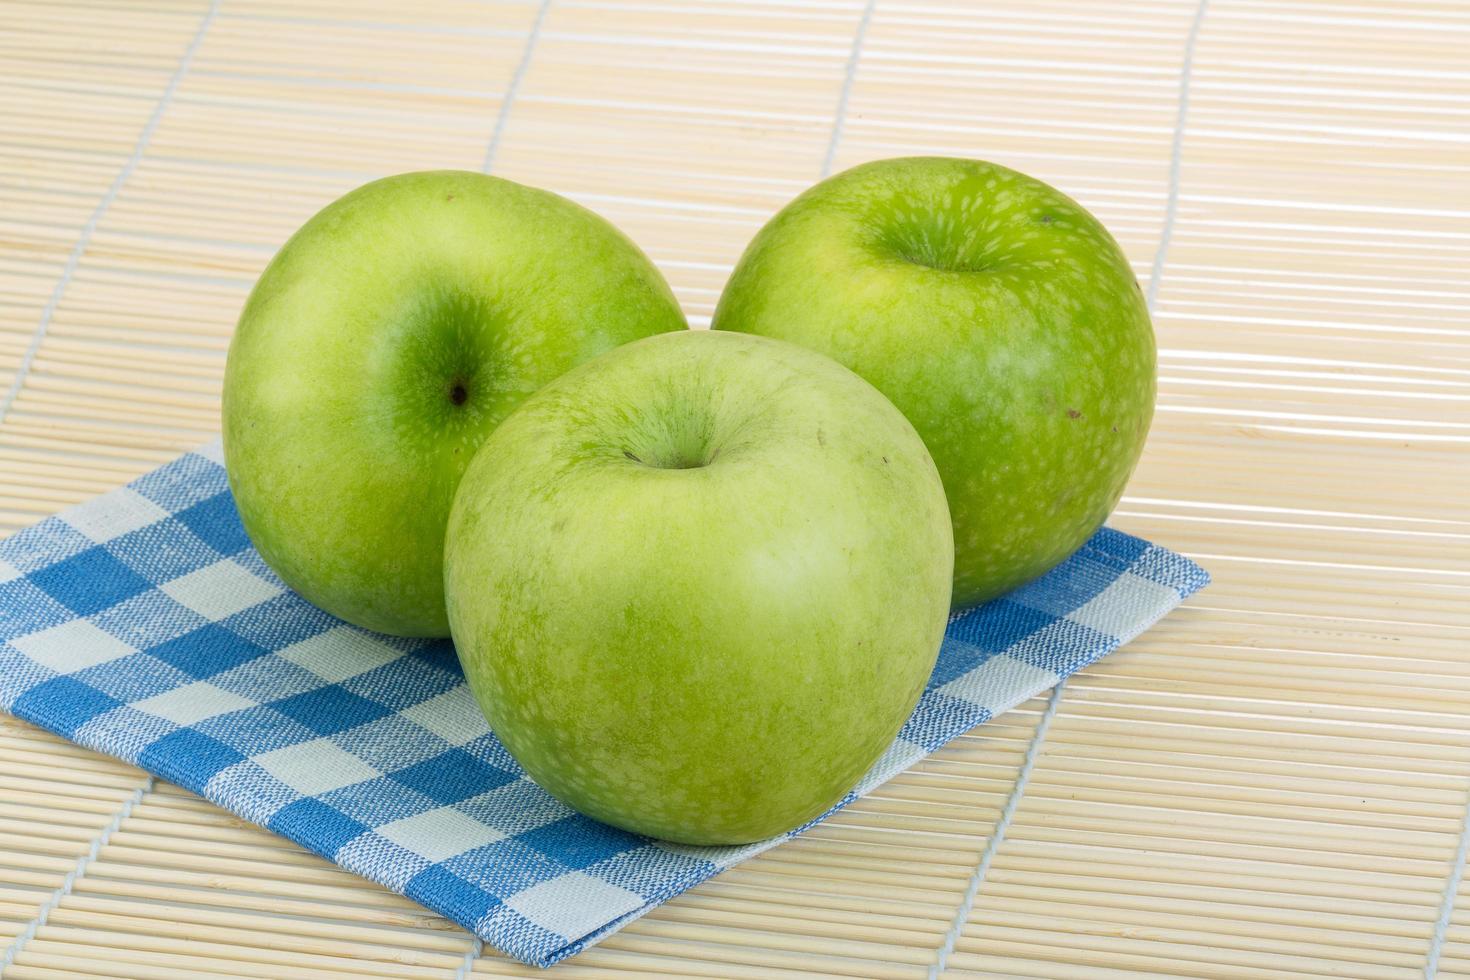 grüner Apfel auf hölzernem Hintergrund foto